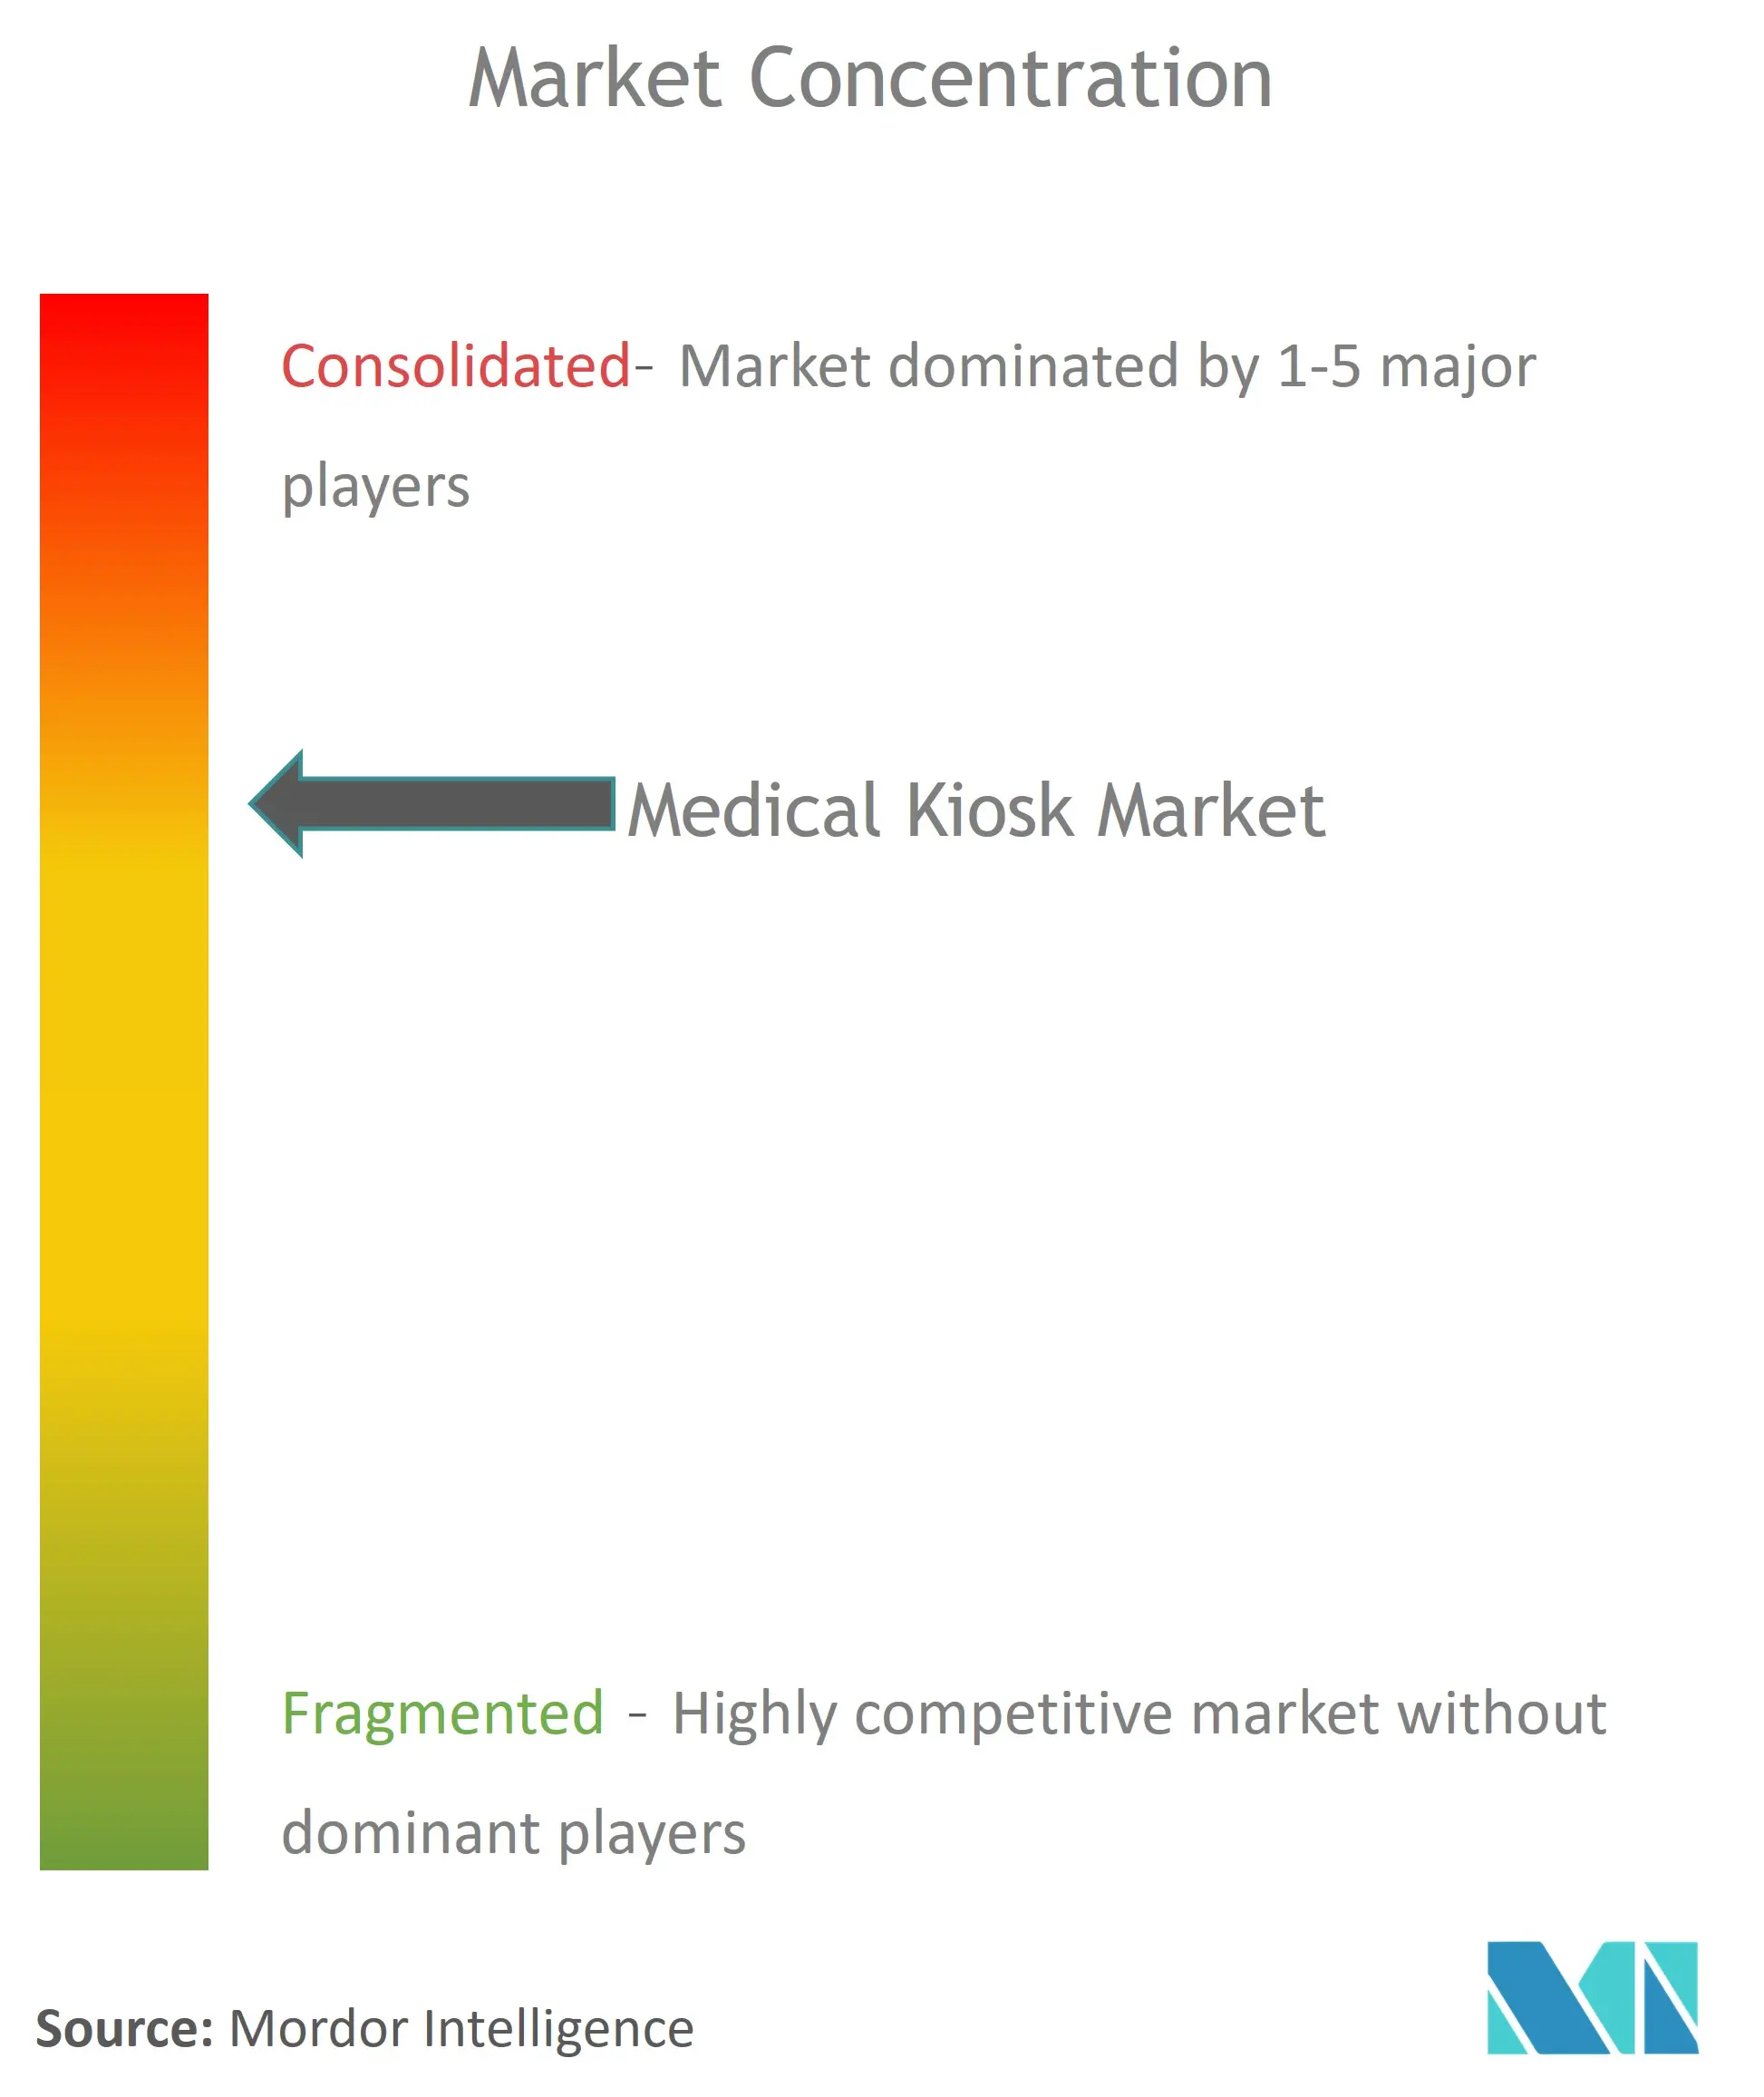 Global Medical Kiosk Market Concentration